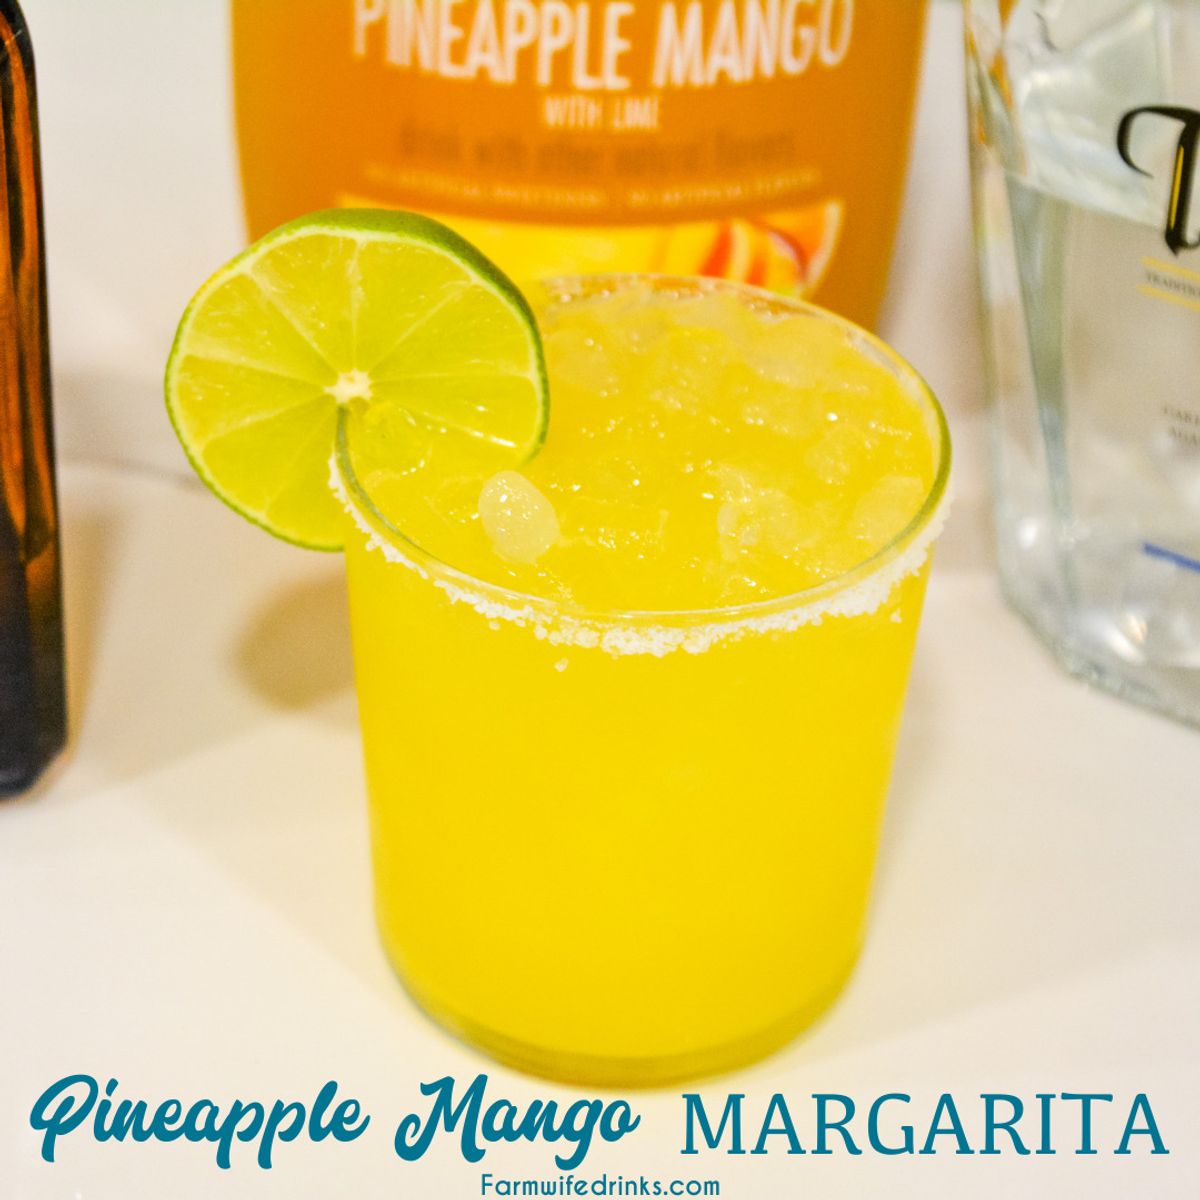 Pineapple Mango Margarita